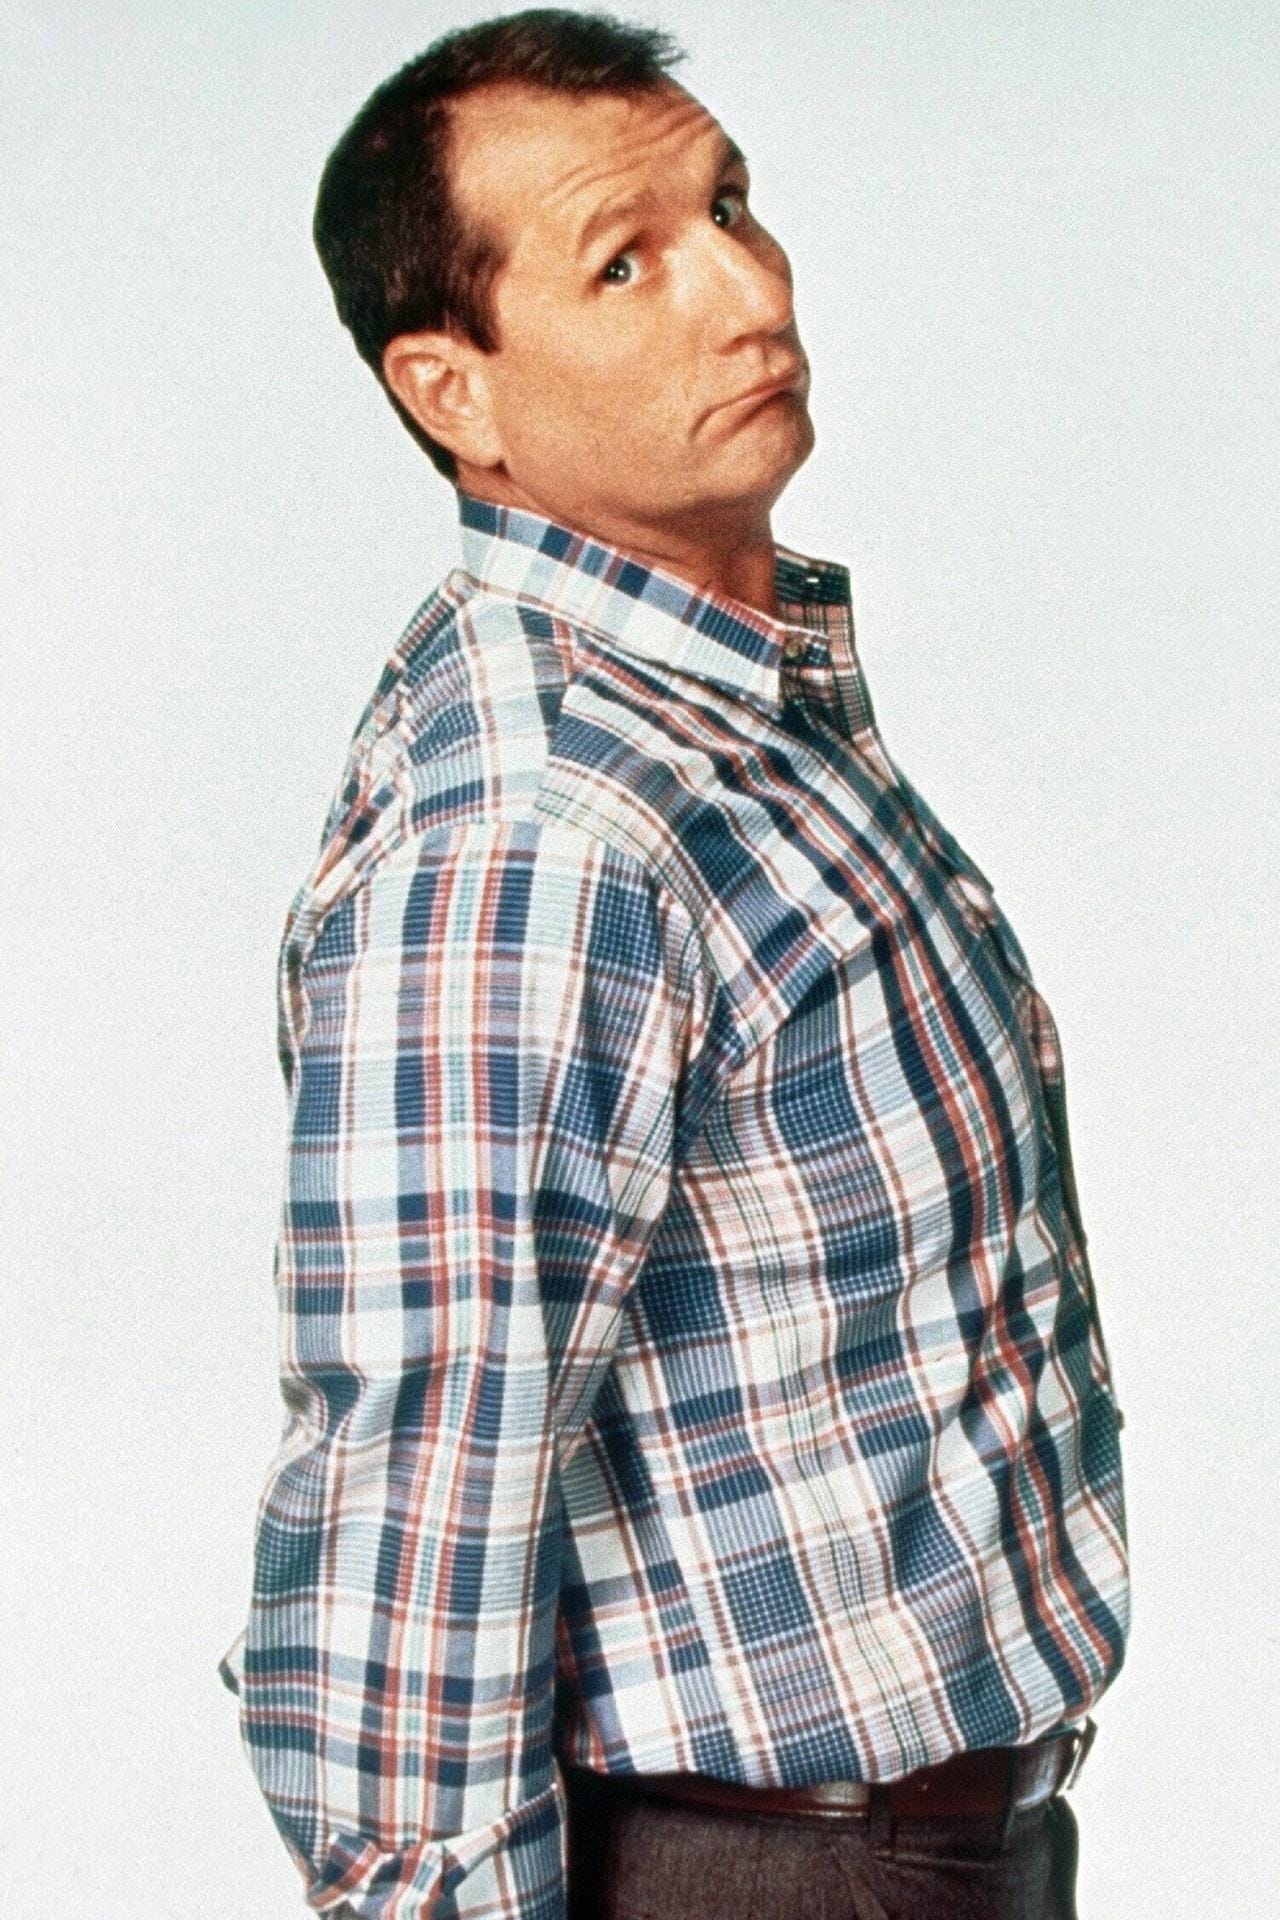 Ed O'Neill: Der Schauspieler spielte die Rolle des Vaters Al Bundy in der Sitcom.